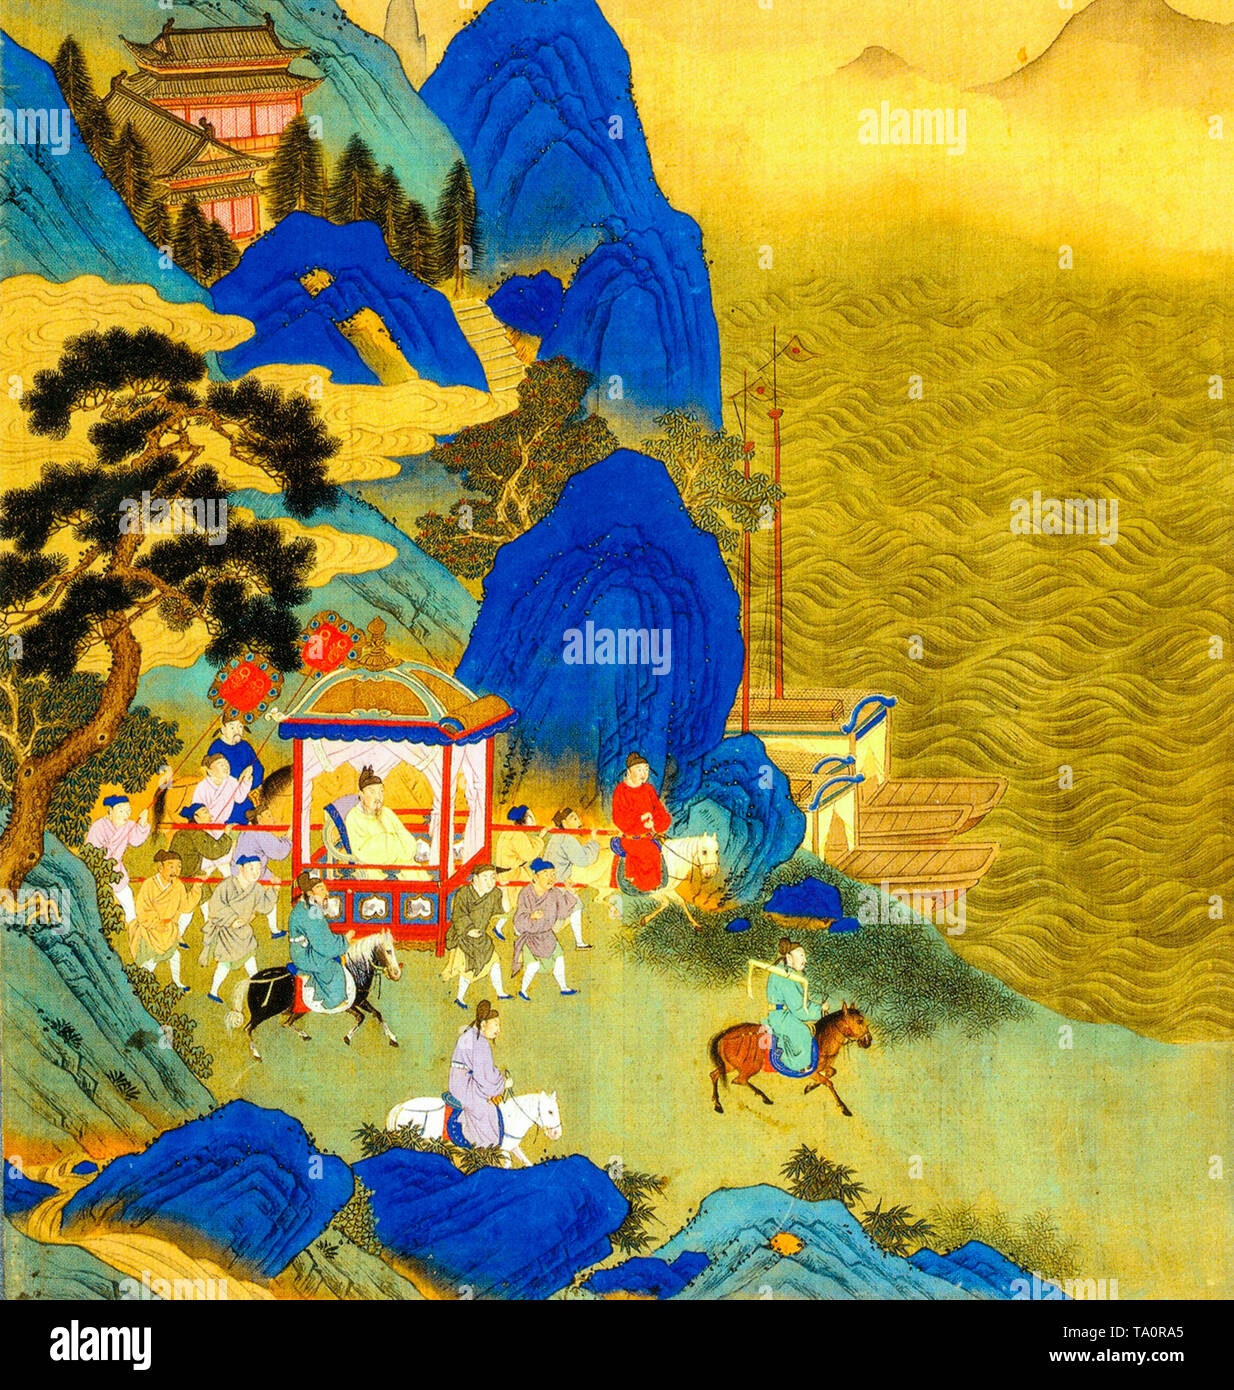 Qin Shi Huang's imperial tournée à travers son empire, peinture, 18e siècle Banque D'Images